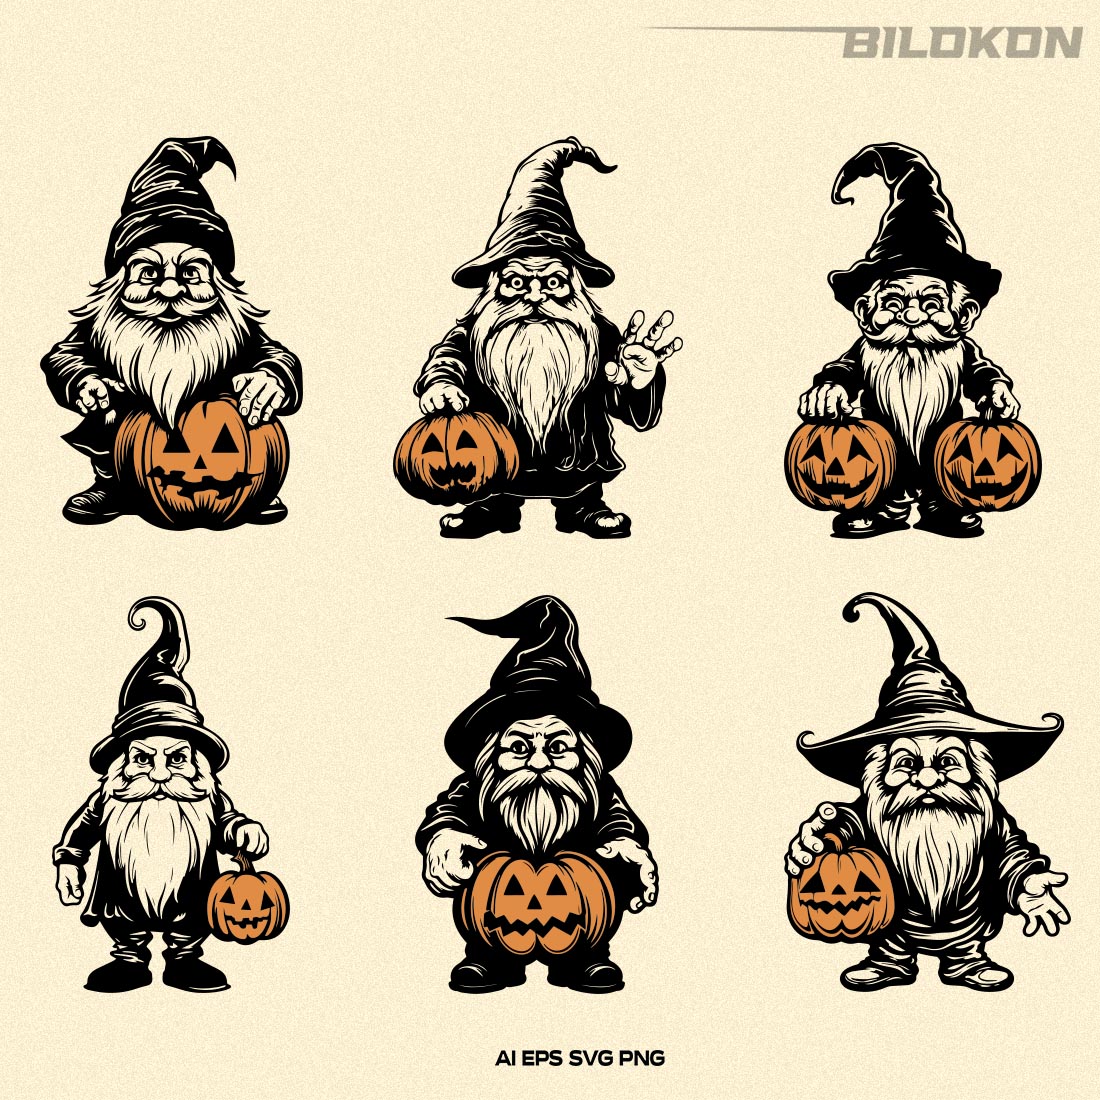 Halloween Gnome Hold Pumpkin, Halloween pumpkin SVG preview image.